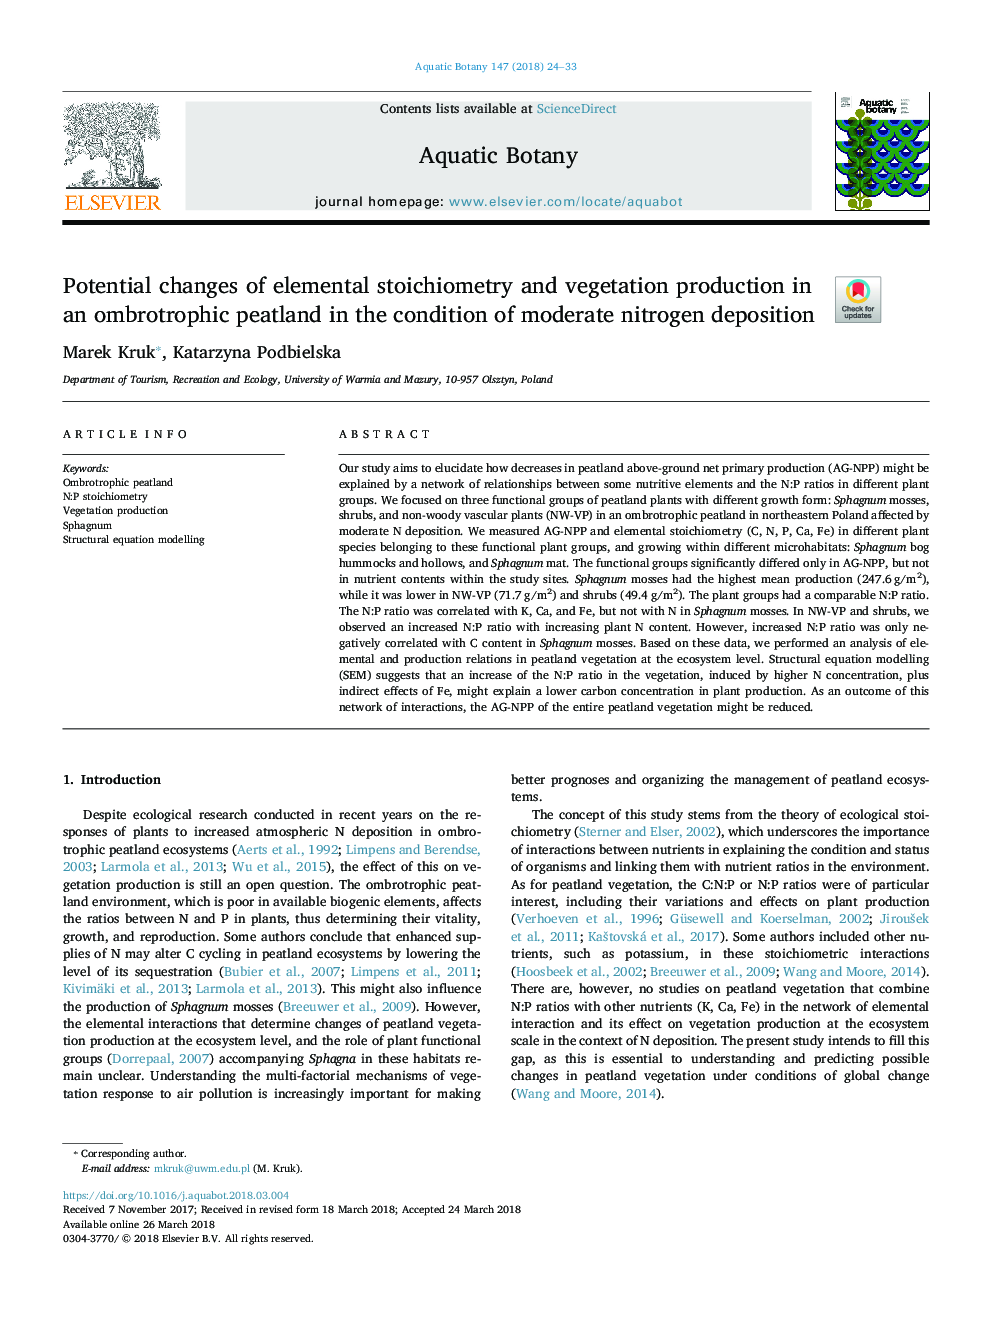 تغییرات بالقوه استوکیومتری عنصری و تولید پوشش گیاهی در یک زلزله باموبایل با شرایط رسوب نیتروژن 